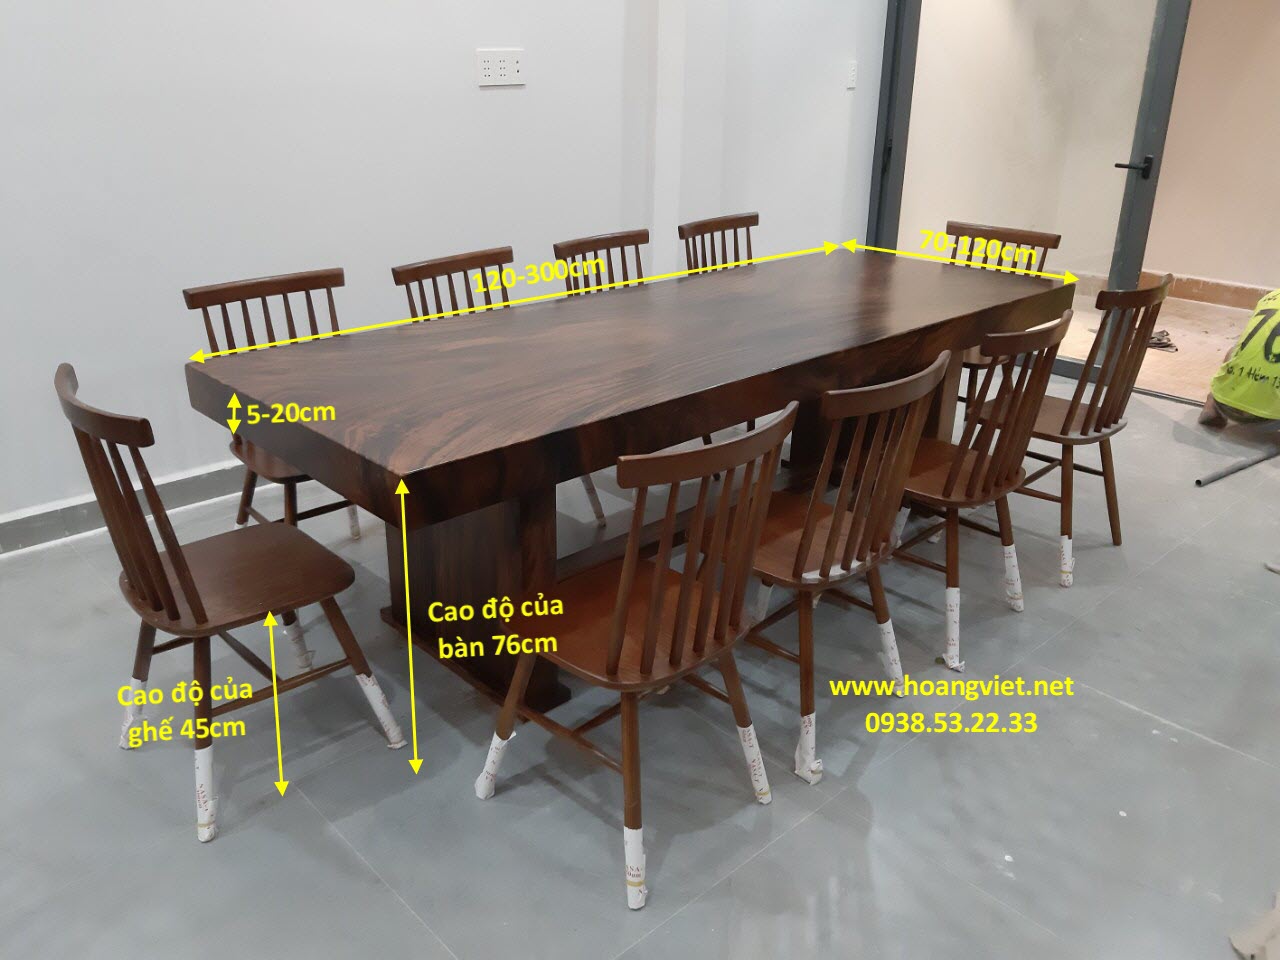 Bàn ghế gỗ chất lượng cao đã trở thành một xu hướng trong thiết kế nội thất tại Việt Nam. Chúng tôi đã sử dụng chất liệu tốt nhất để tạo ra những bộ ghế và bàn sang trọng và đẳng cấp, đồng thời tôn vinh nét đẹp tự nhiên của gỗ.